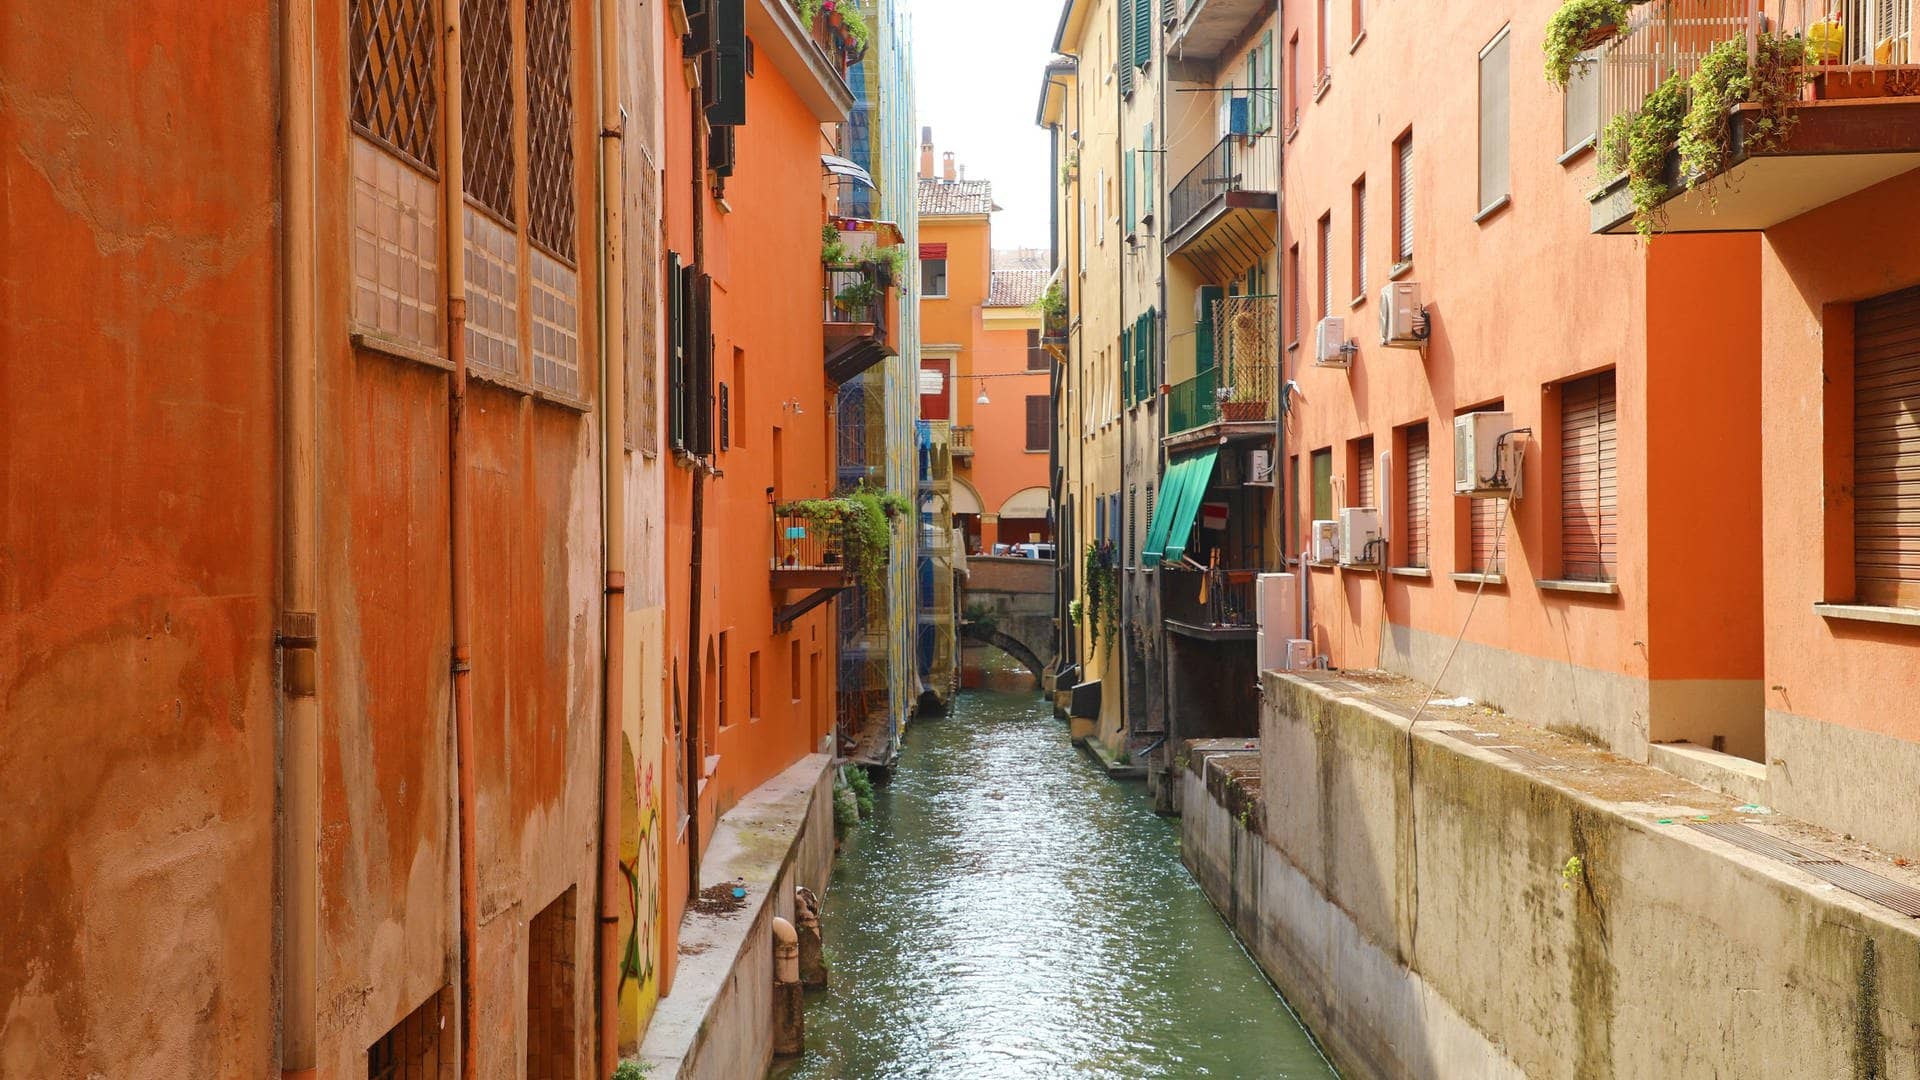 Italien-Städtetrip mal anders: Kanäle fließen durch die Gassen der Stadt zwischen Häuserreihen mit kleinen Balkonen an vielen Wohnungen und schöner Altstadt.